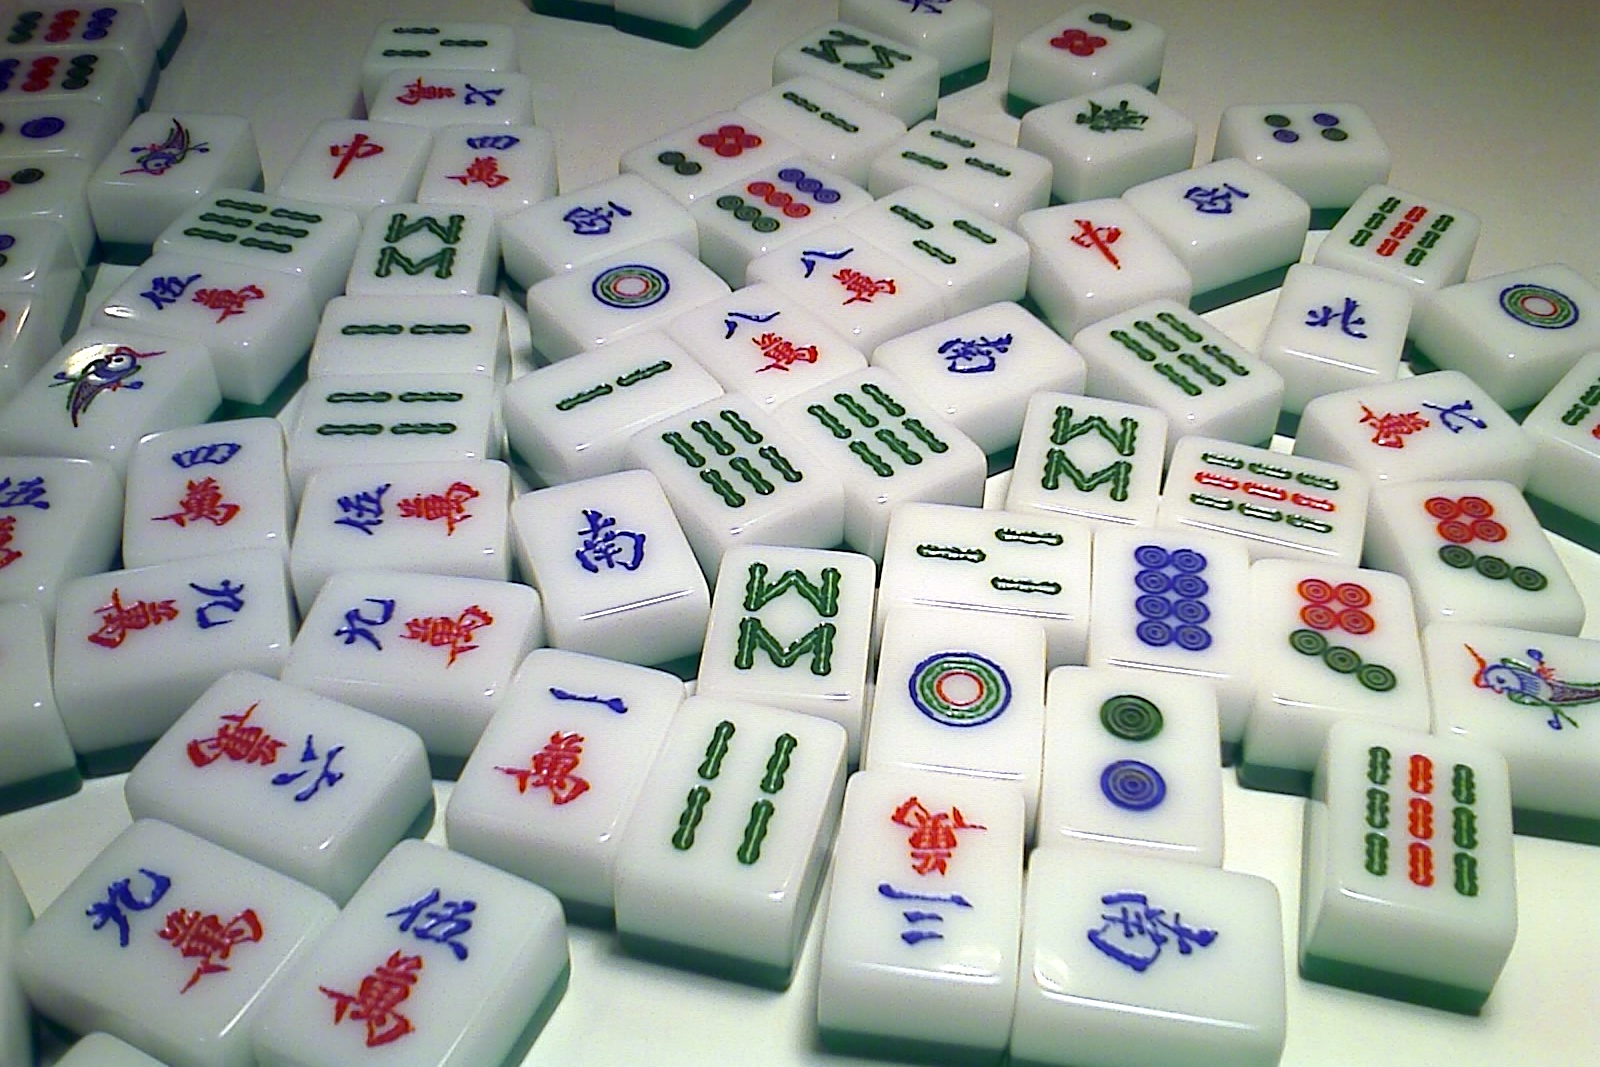 Mahjong On